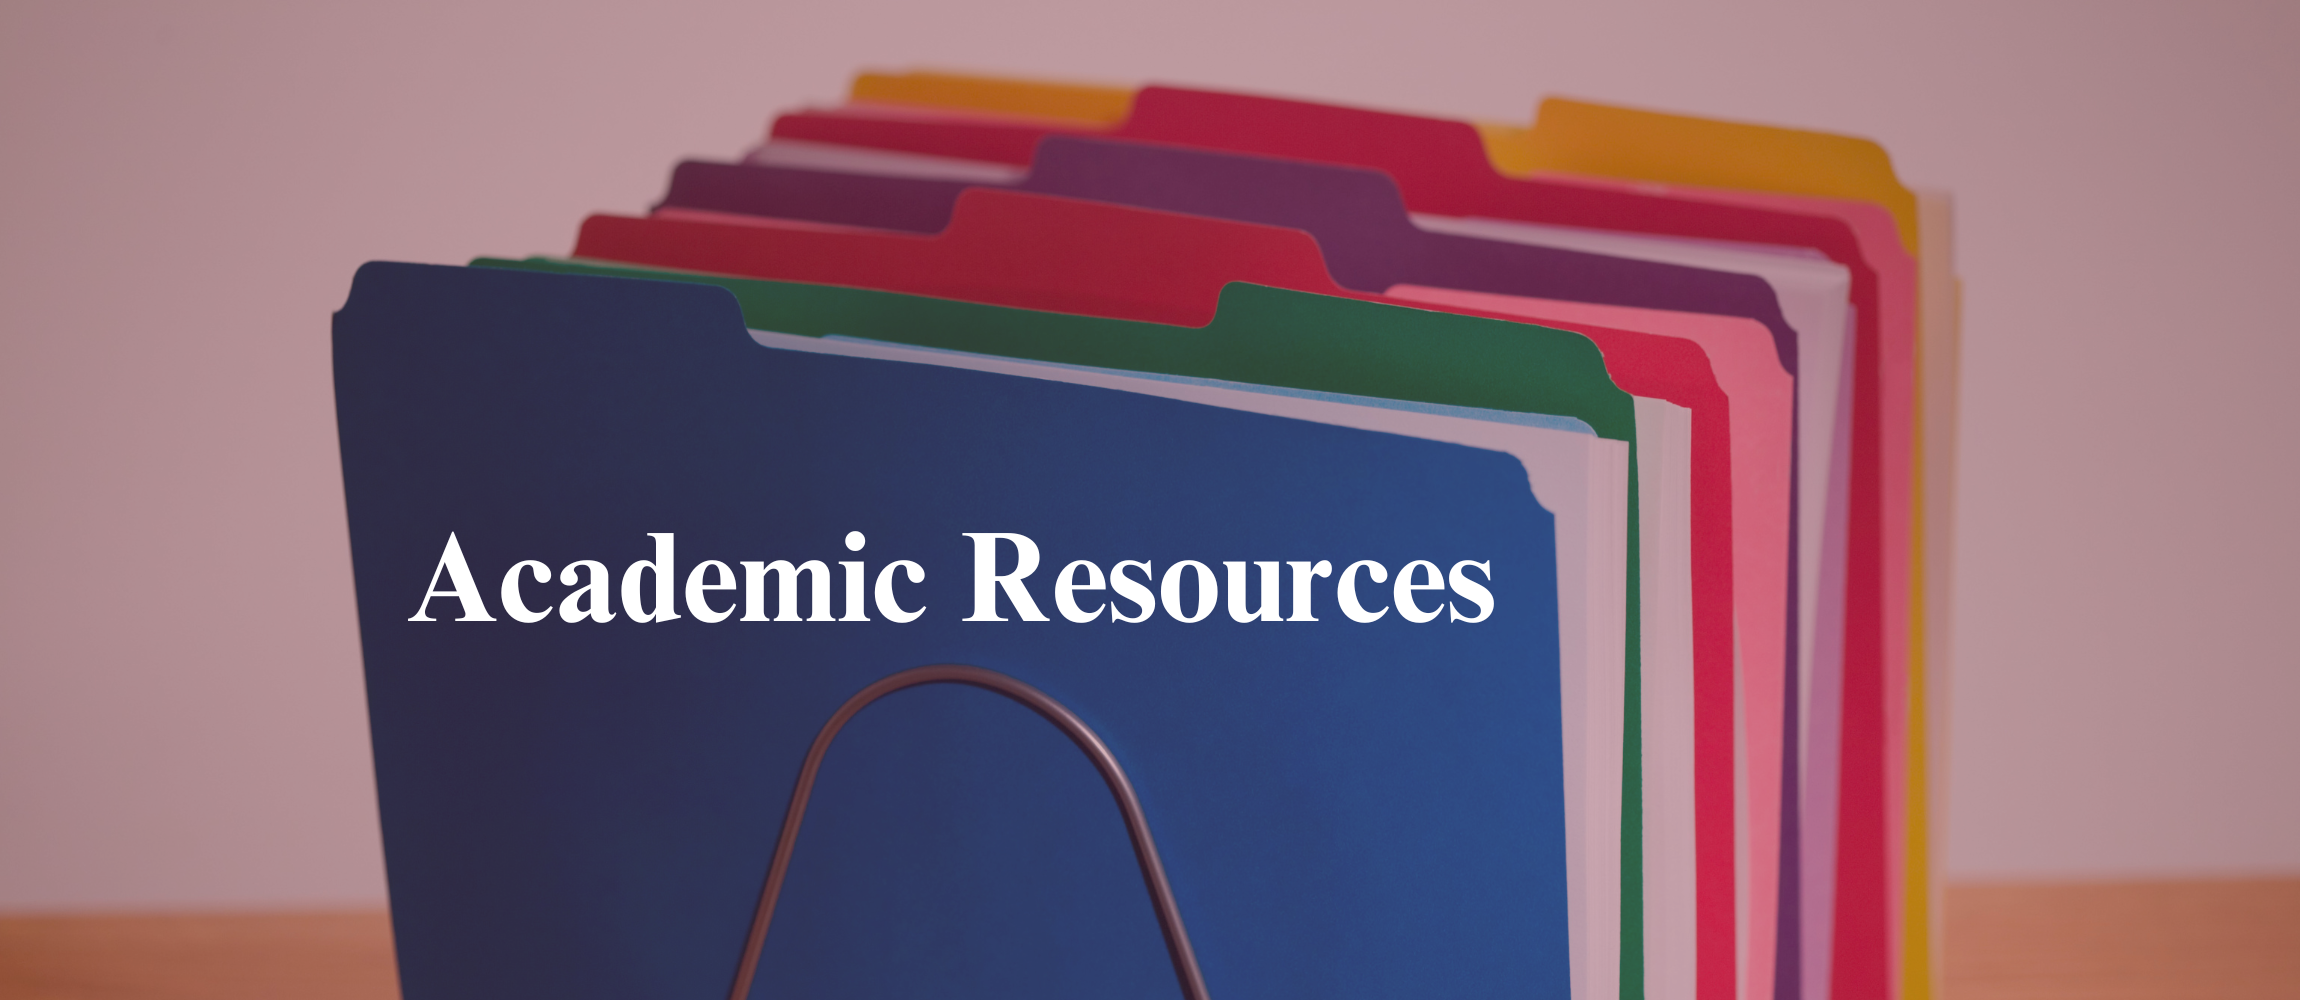 Academic Resources 